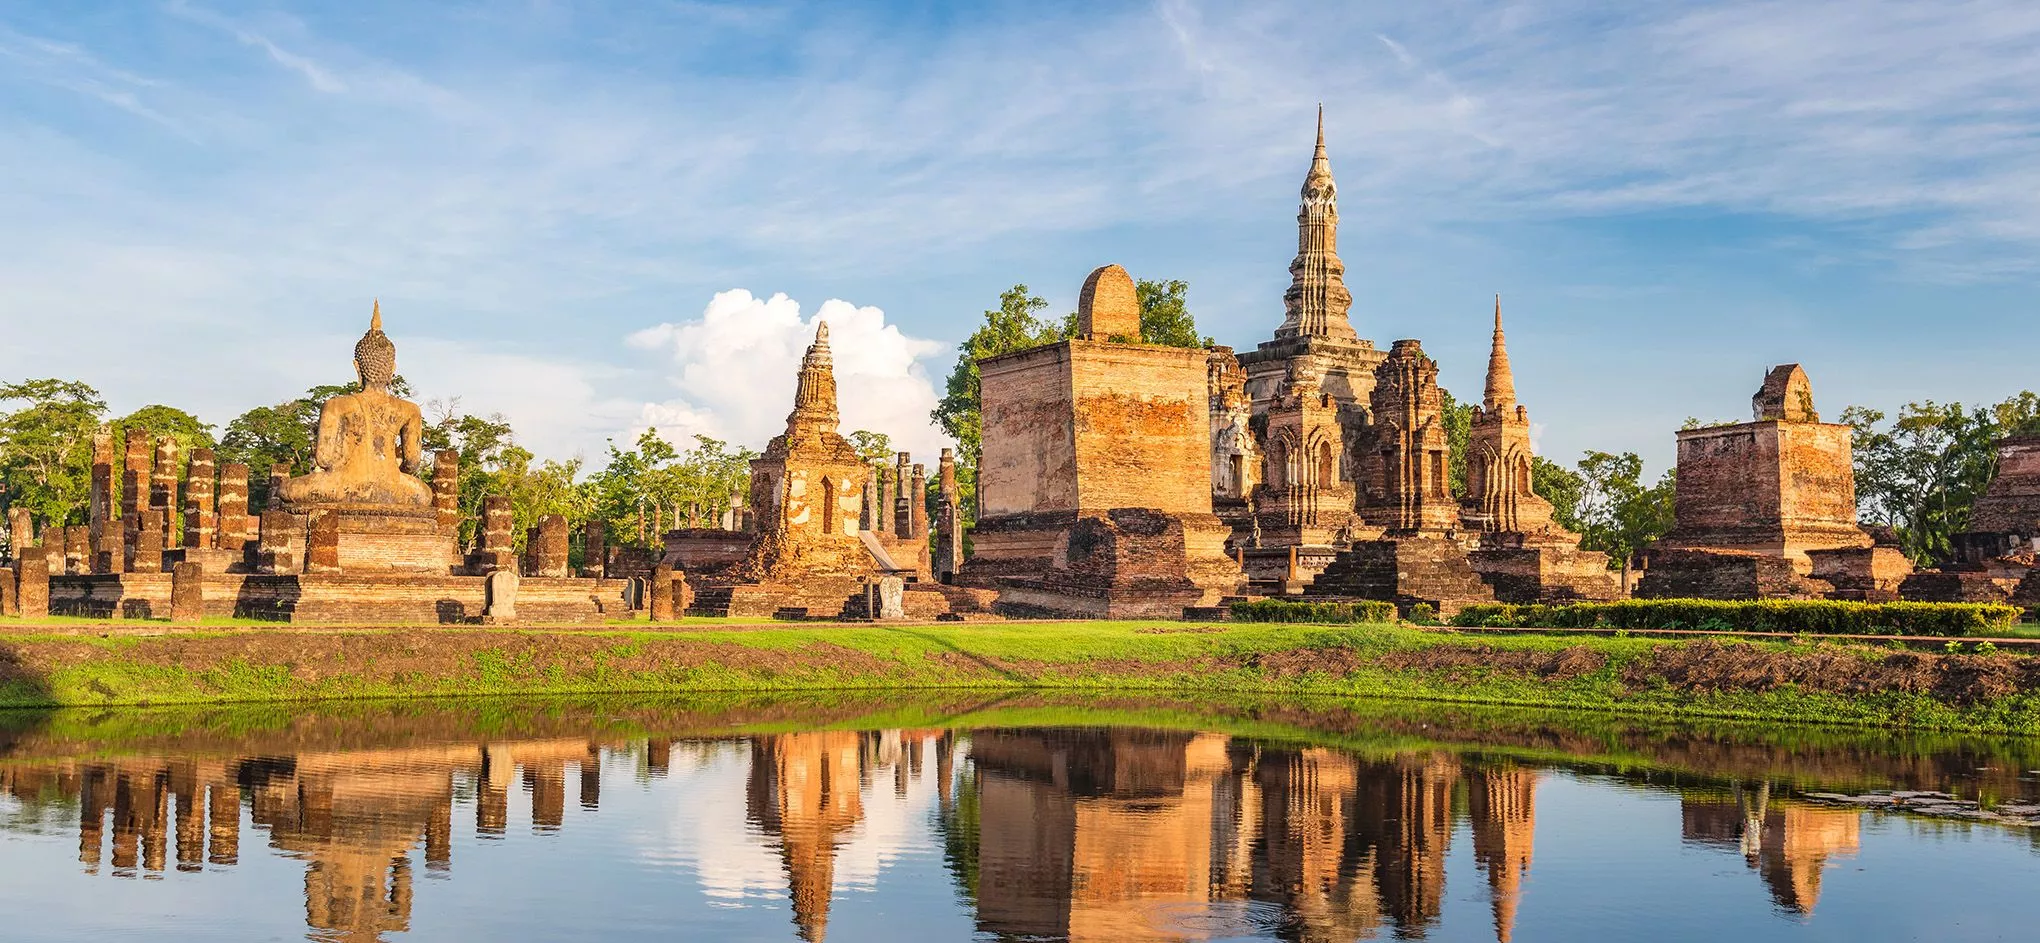 Etwa 200 Ruinen stehen im 70 Quadratkilometer großen Skulpturenpark von Sukothai, der verlassenen Hauptstadt des ersten thailändischen Königreichs